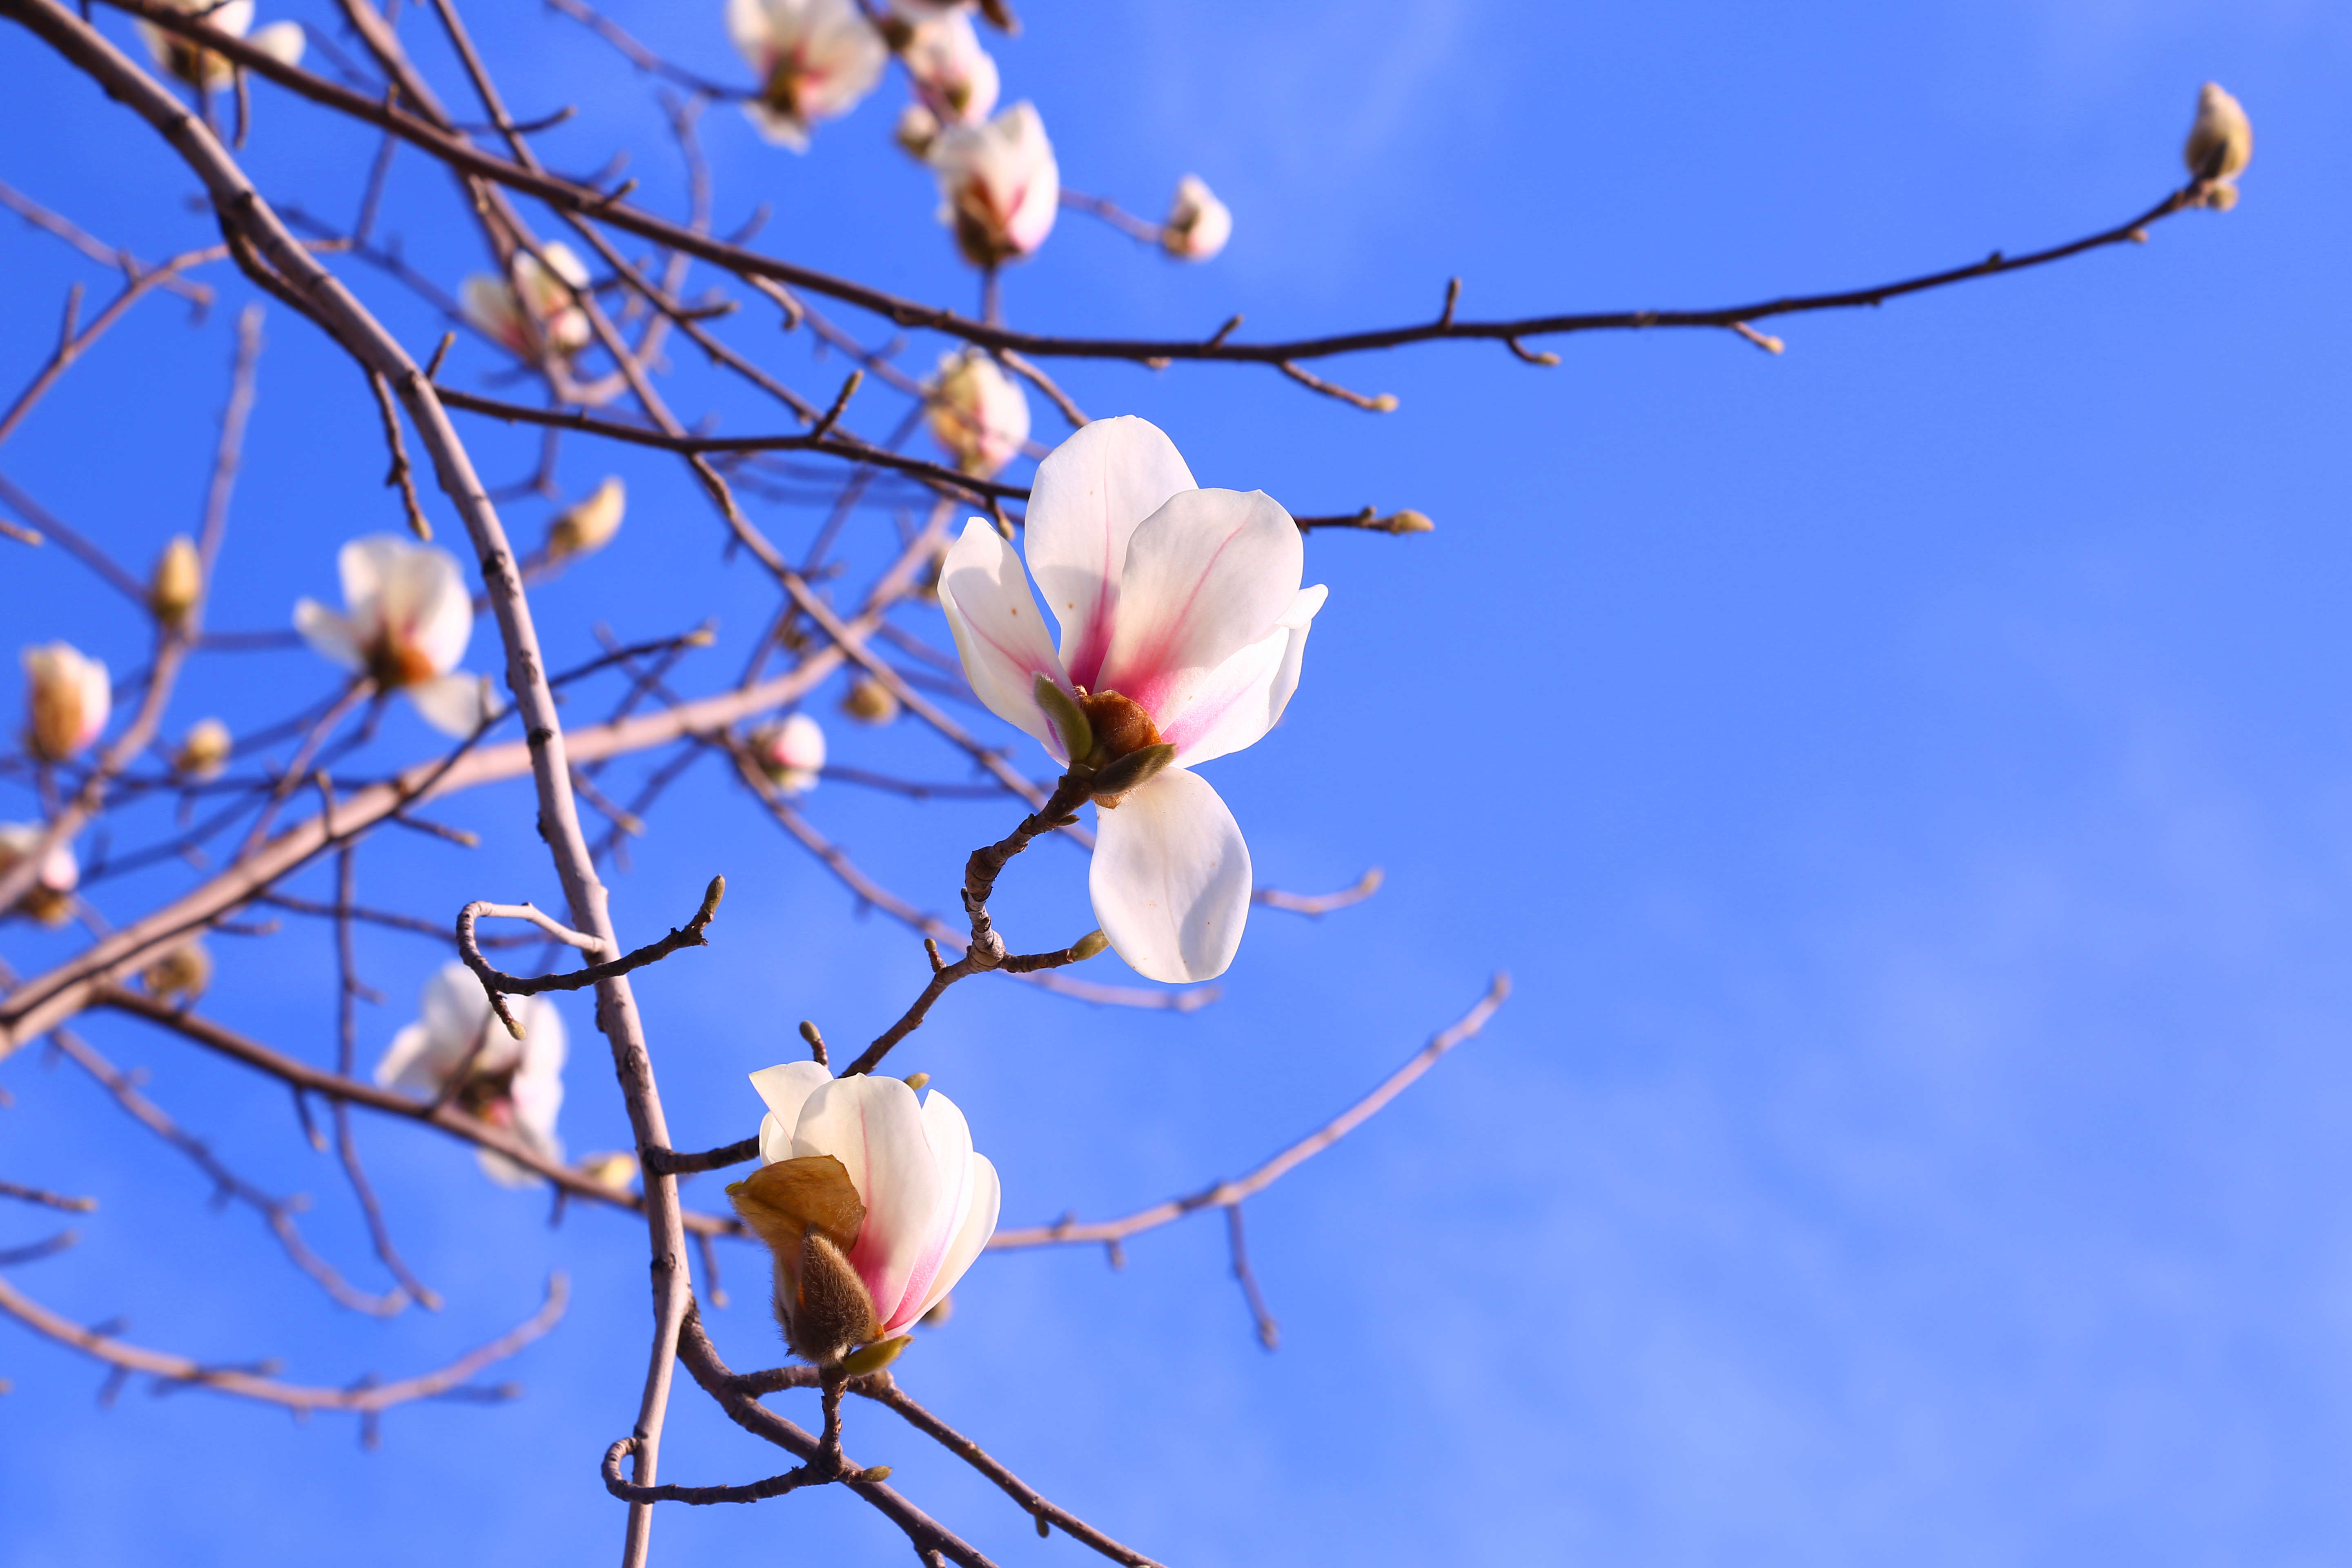 【图集】蓝天下的玉兰花, 春意盎然